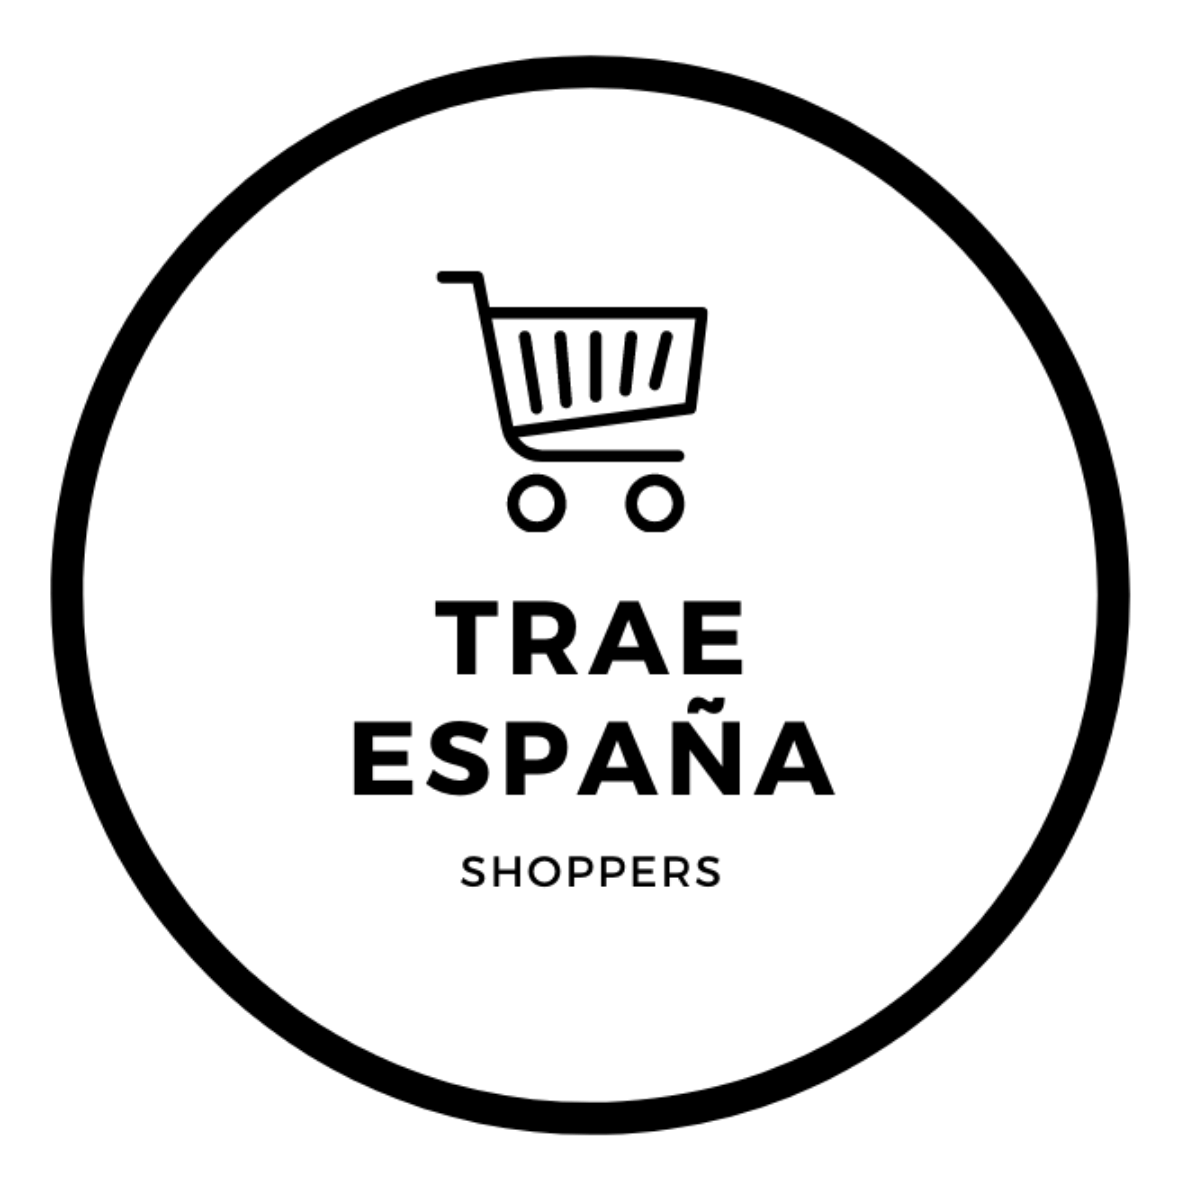 Trae España Shoppers